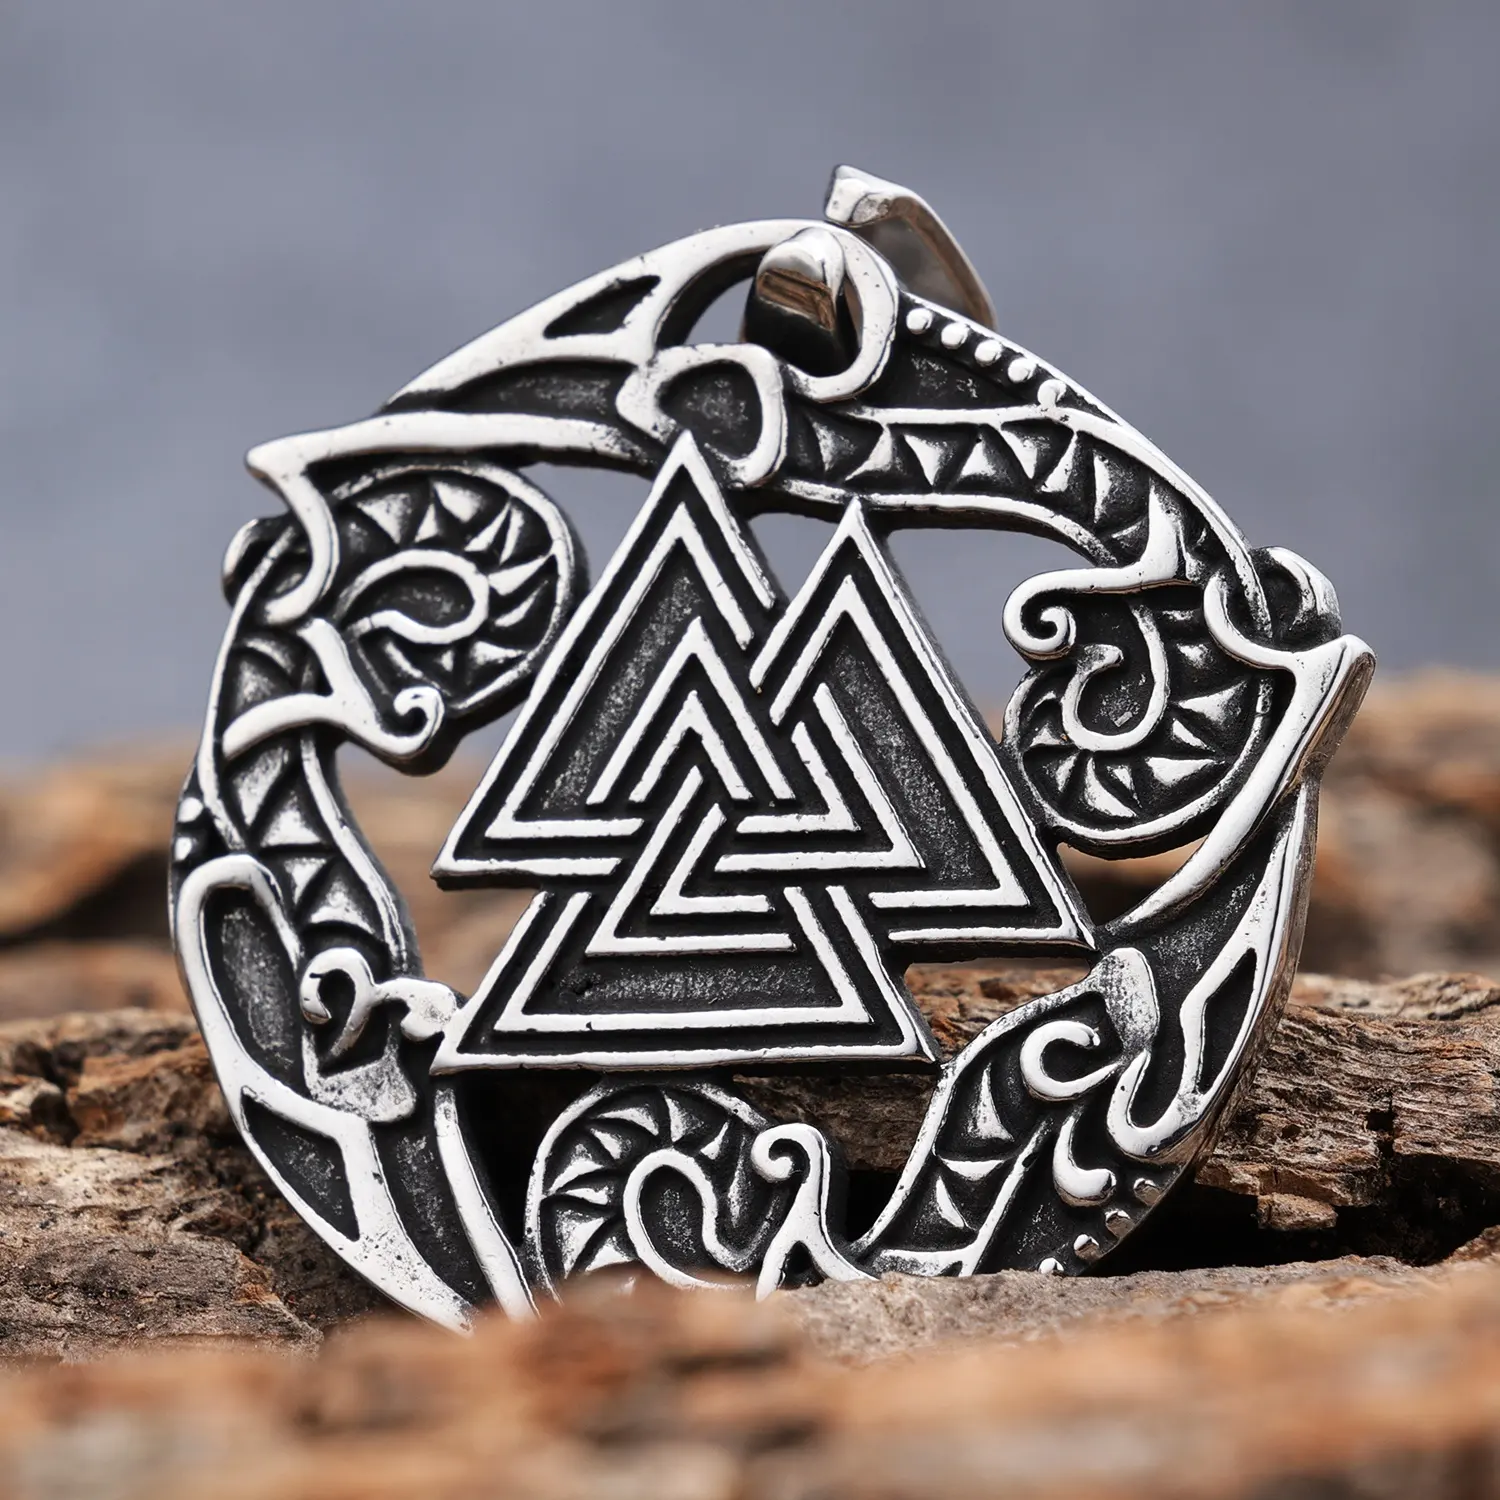 Joyería vikinga nórdica de acero inoxidable personalizada collar con colgantes de símbolo pagano valknut triángulo Odín vikingo antiguo